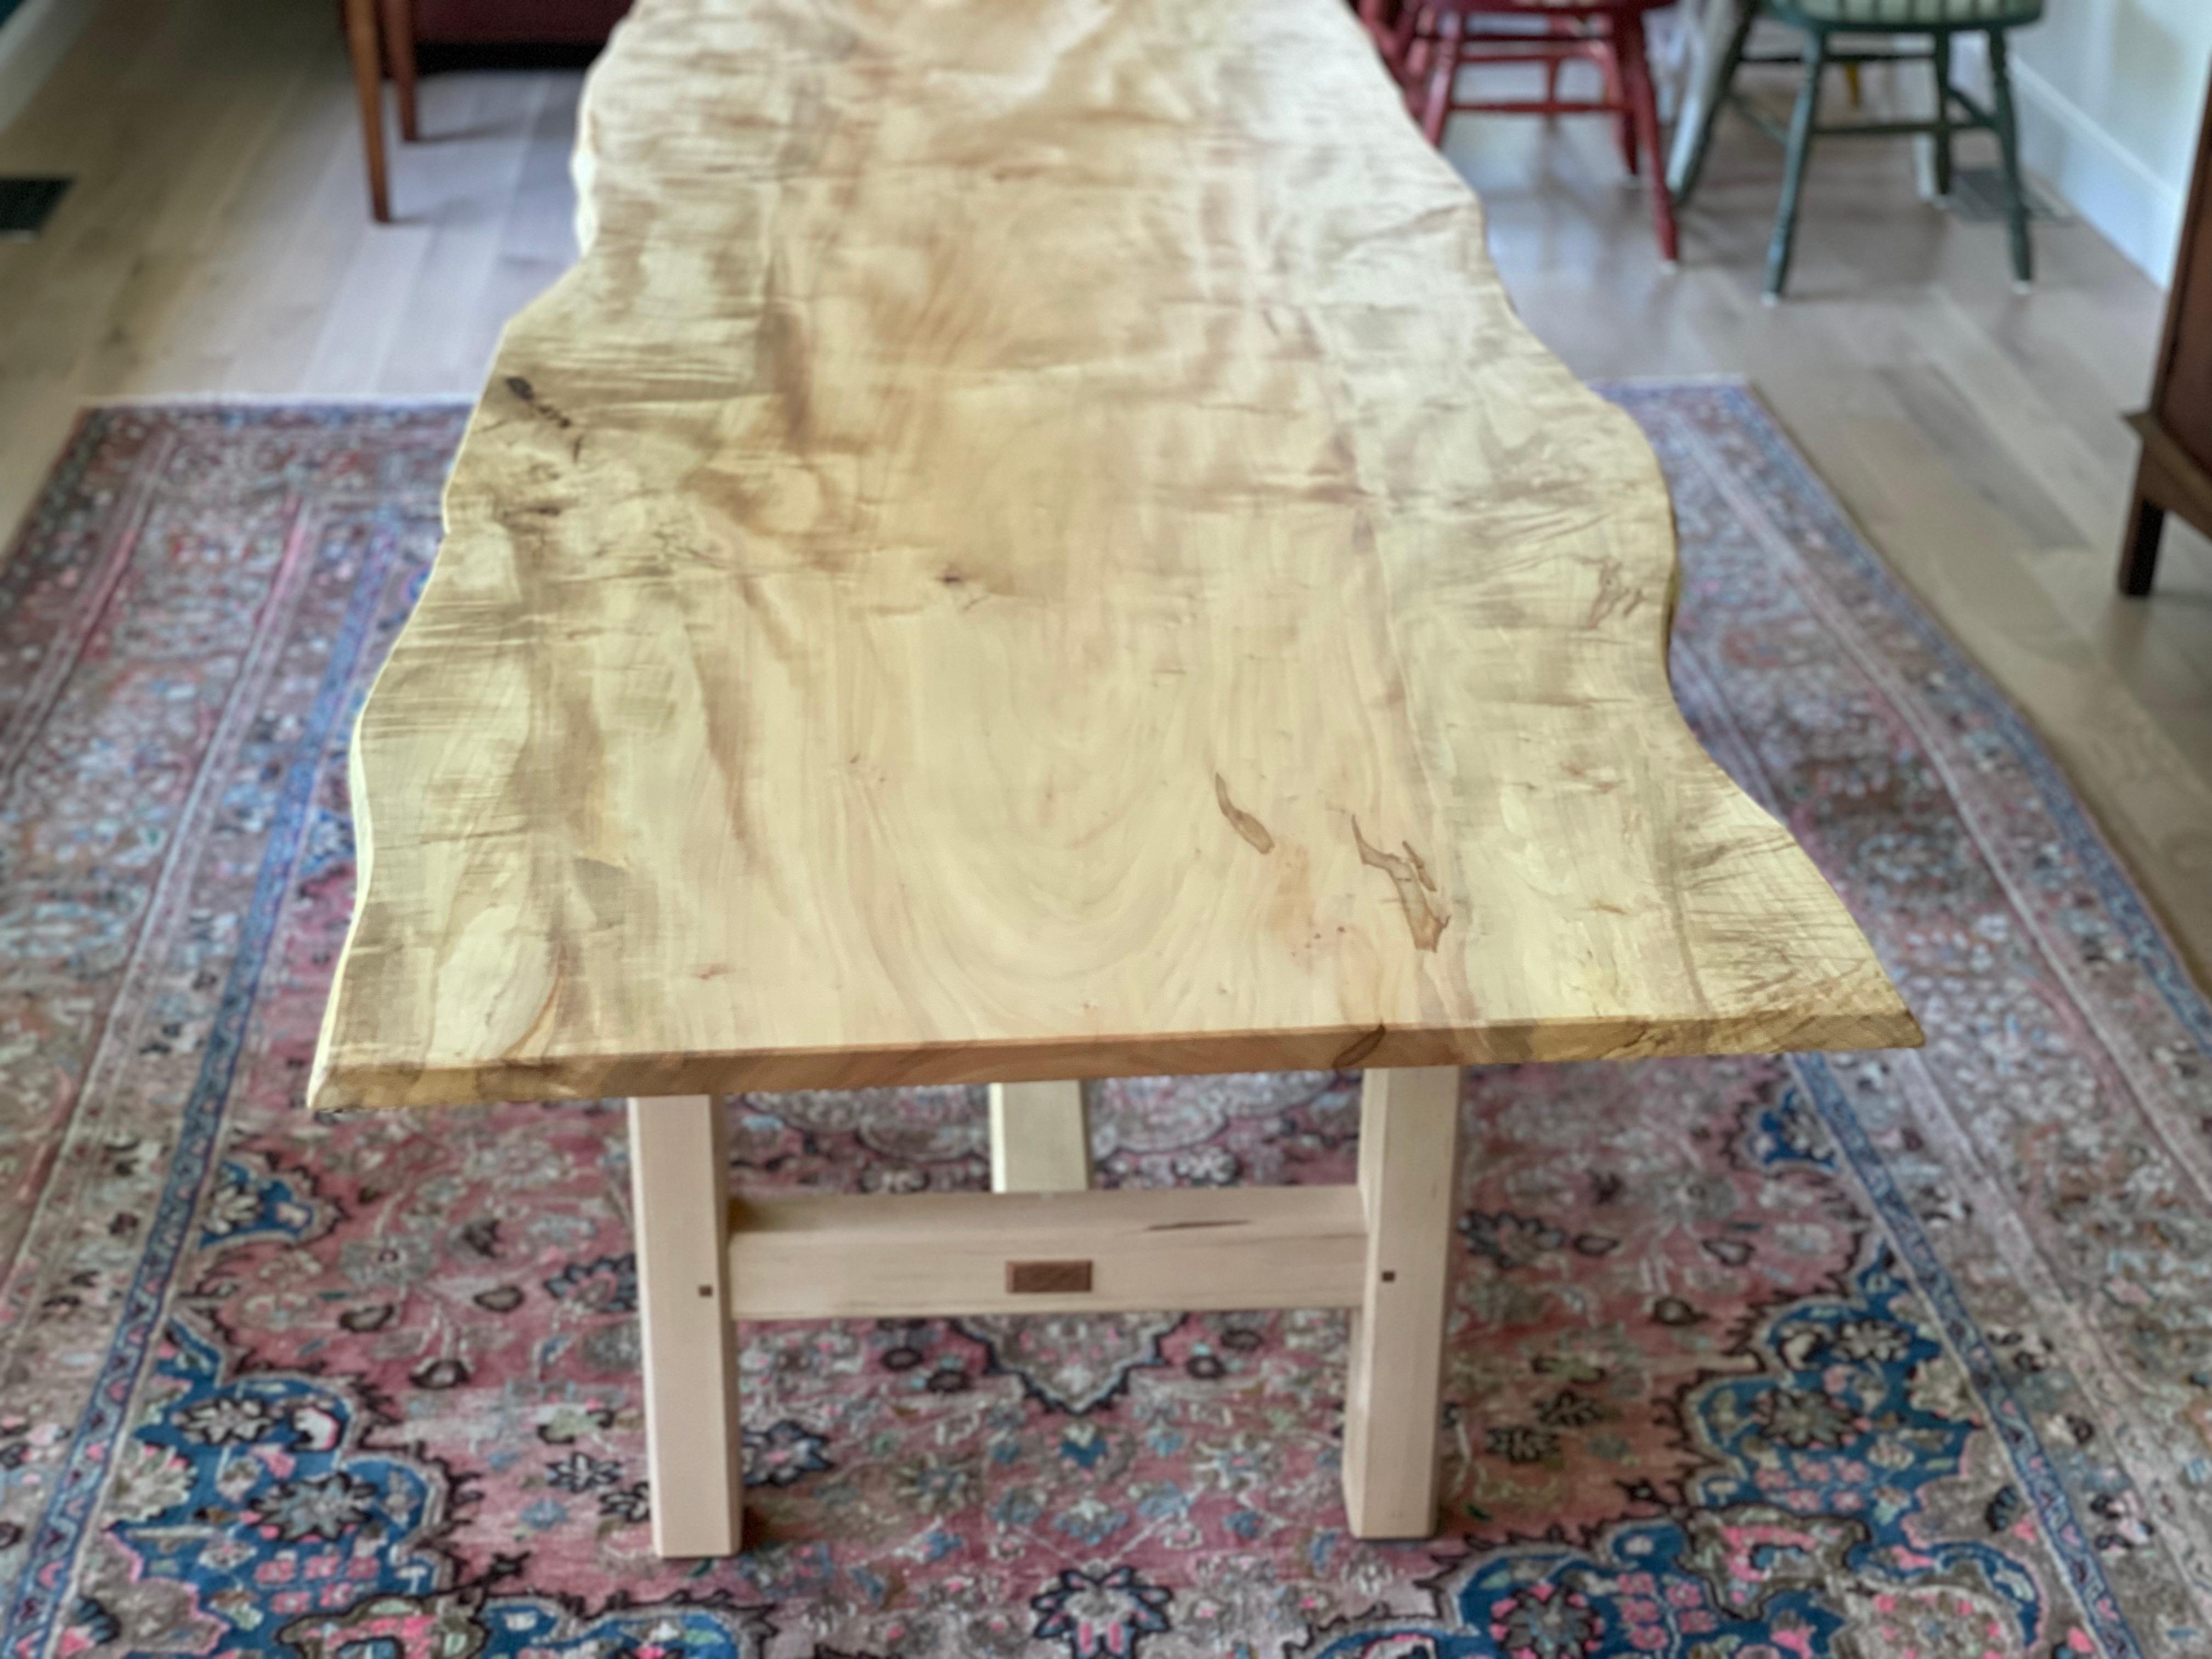 Cette table à manger à tréteaux, fabriquée à la main, présente des éléments propres à la charpente traditionnelle japonaise, ce qui en fait une table à manger subtile et très solide. Cette table comporte une lourde dalle de frêne blanc scié sur